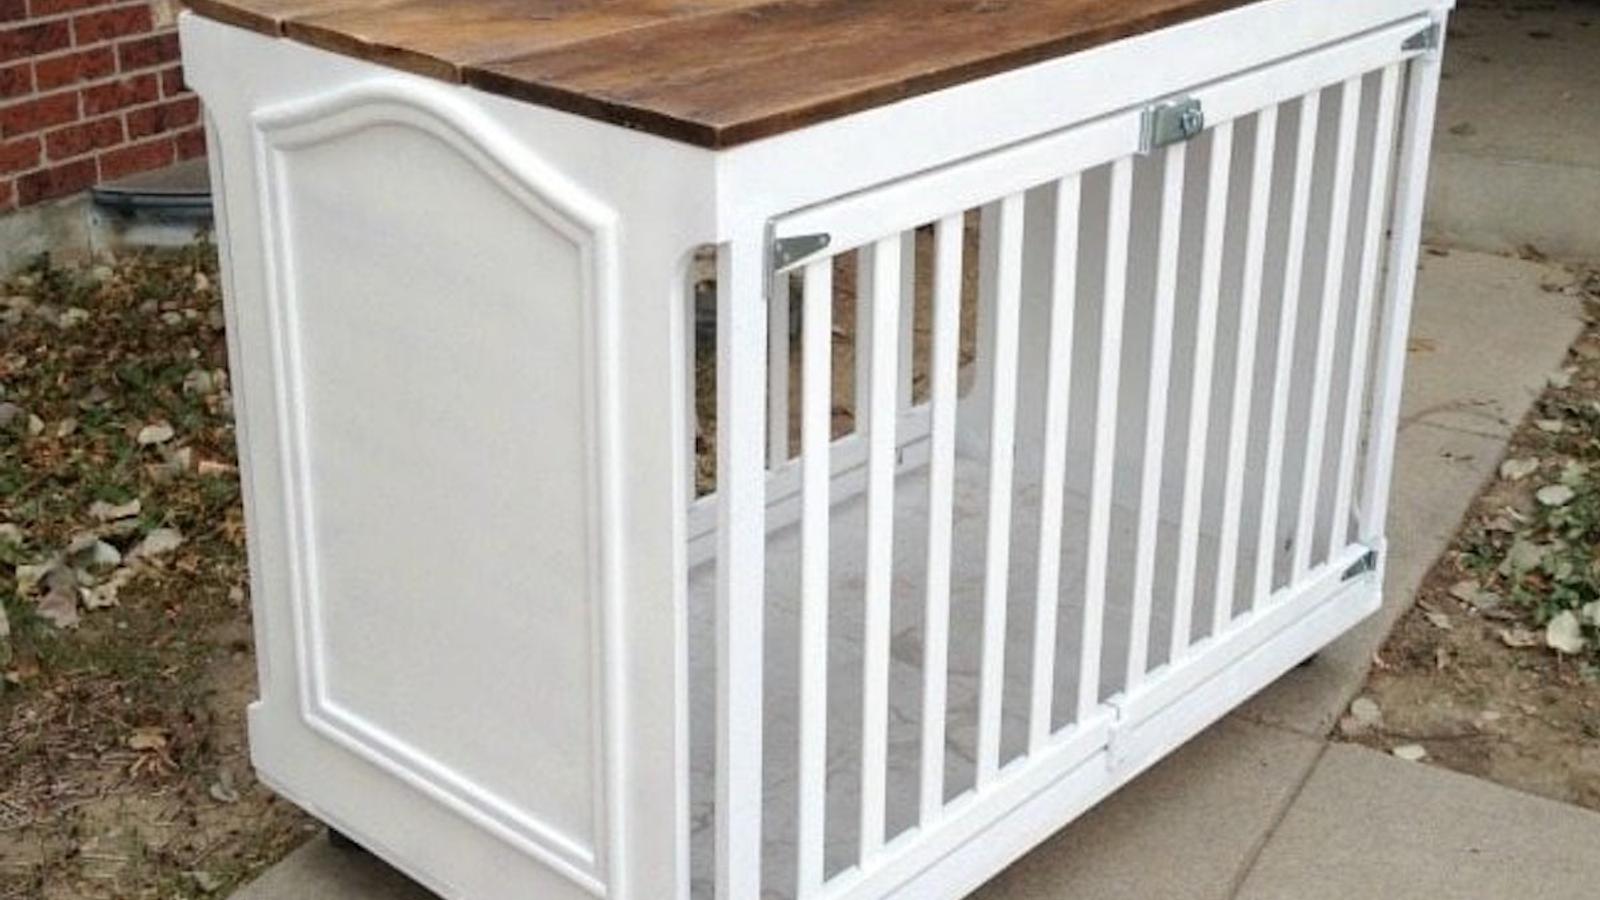 Comment récupérer un lit de bébé pour faire une superbe cage pour chien